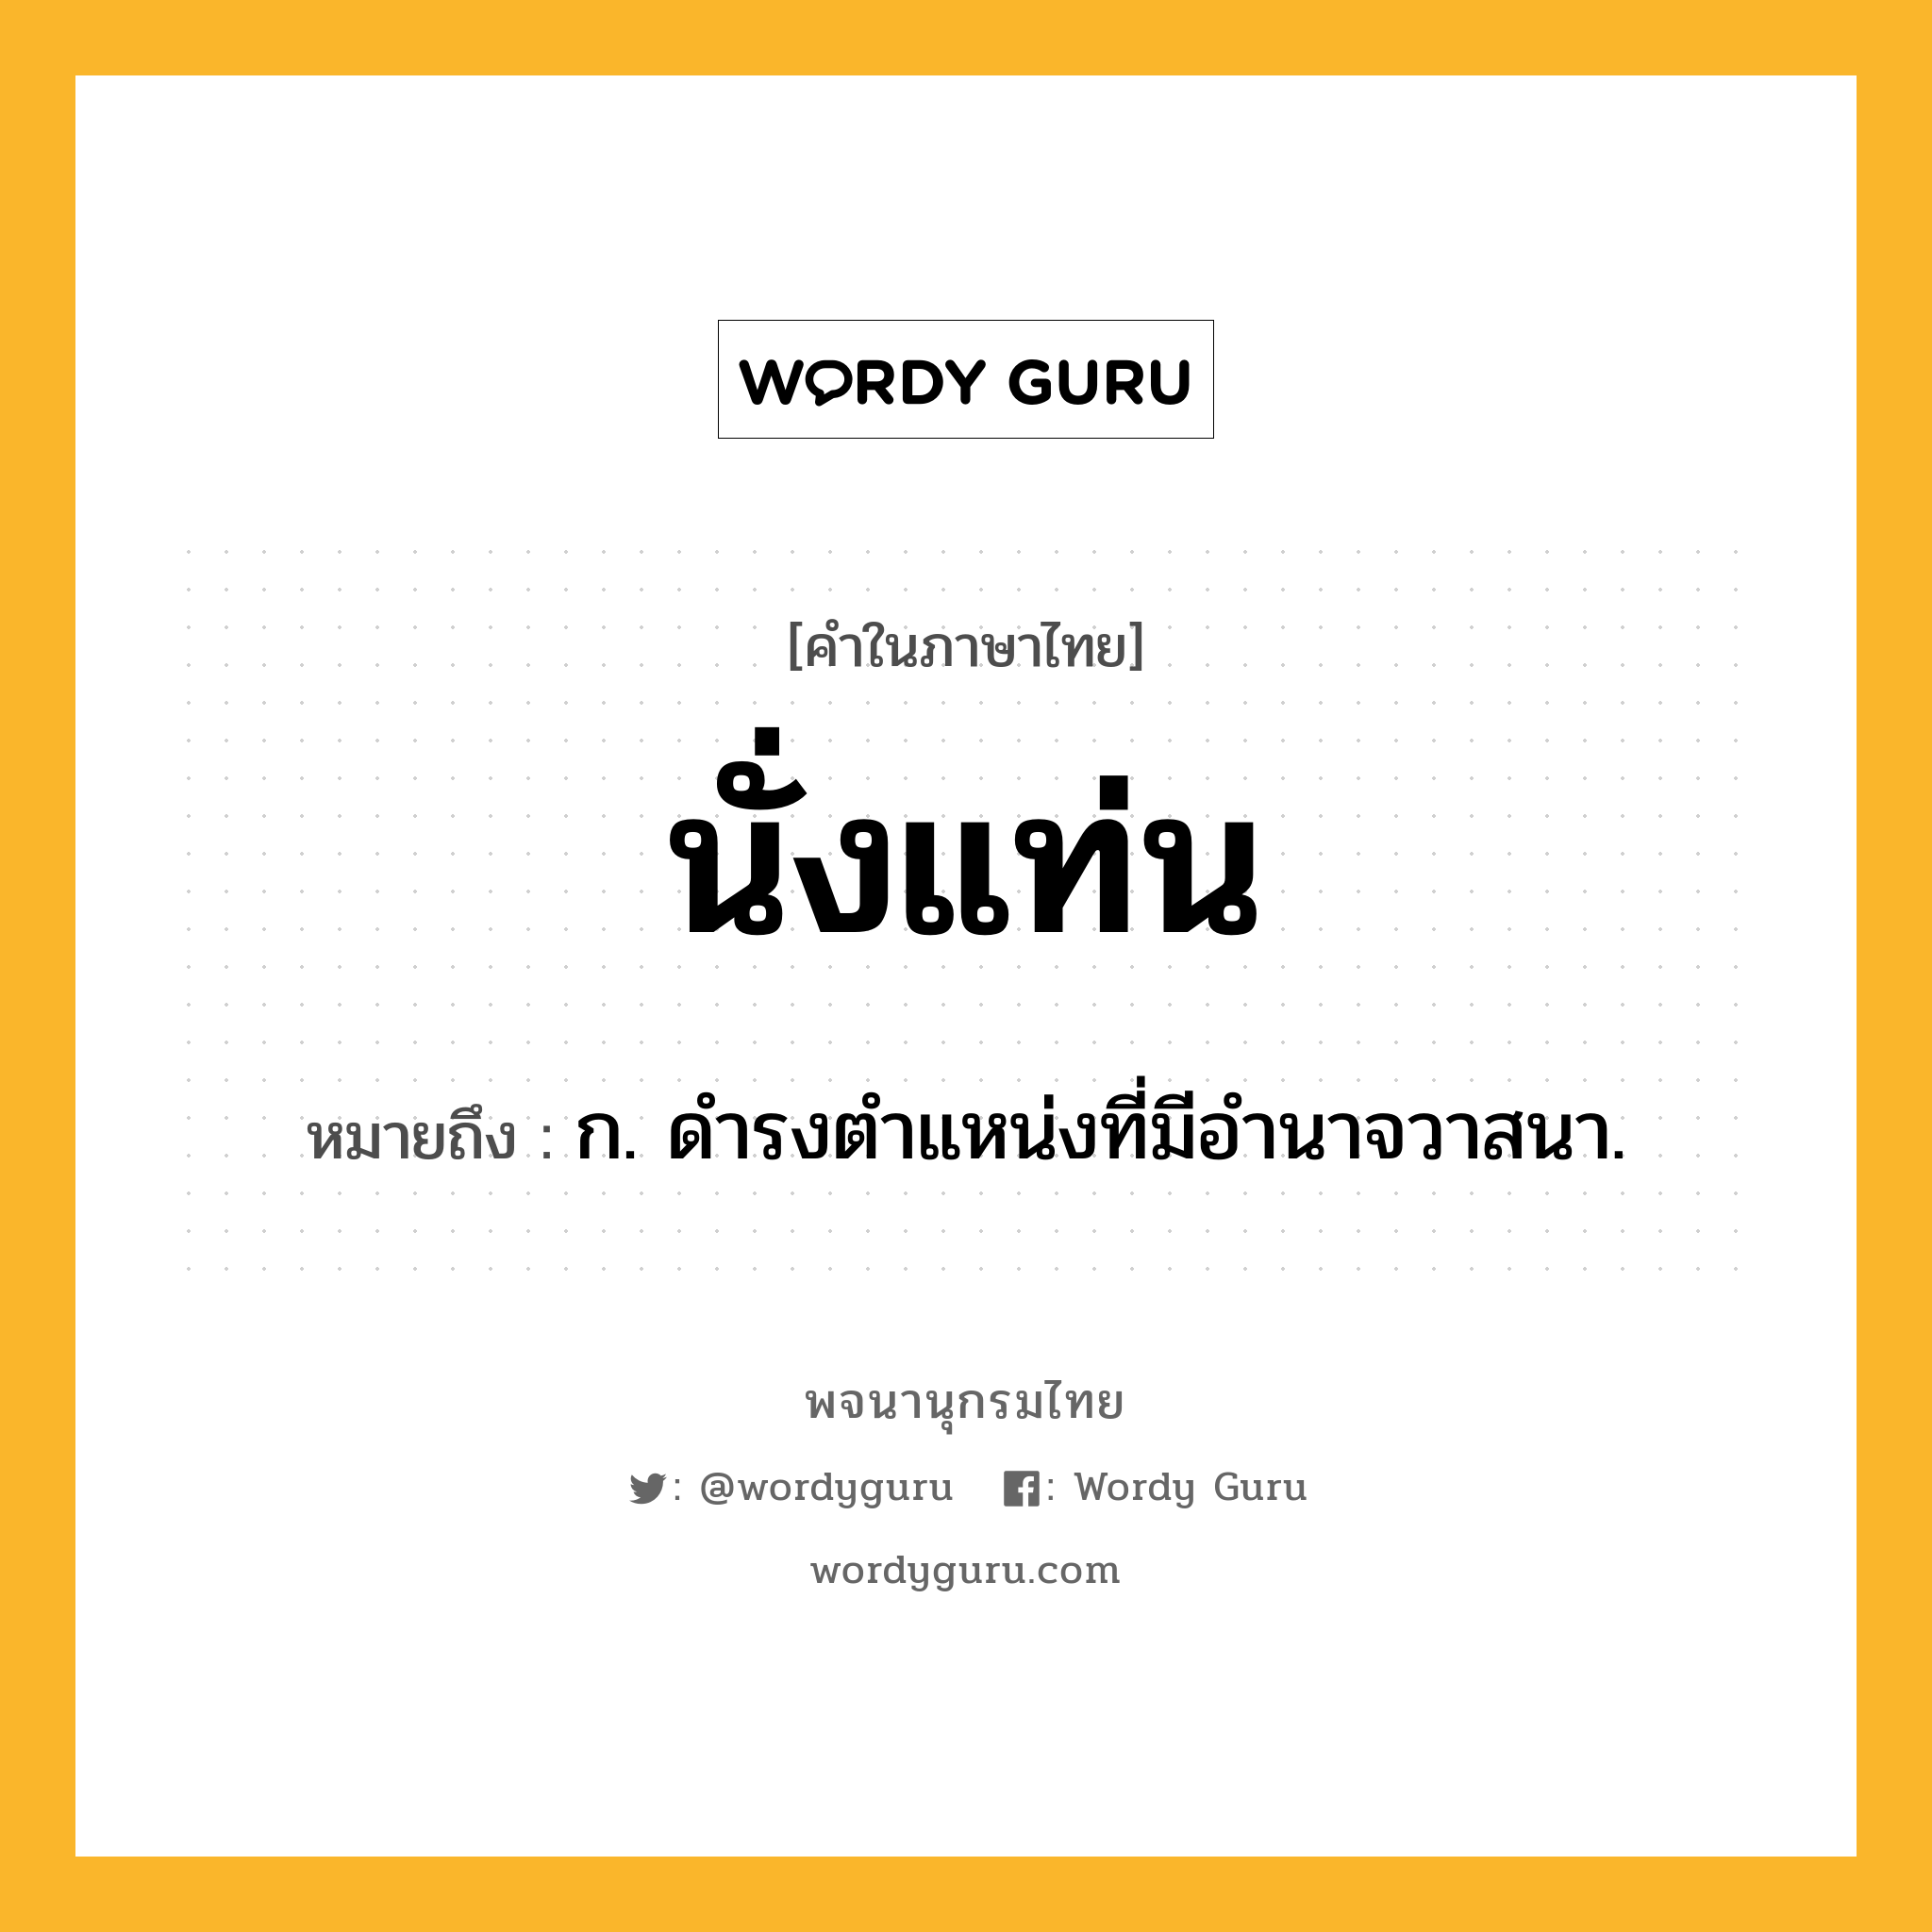 นั่งแท่น หมายถึงอะไร?, คำในภาษาไทย นั่งแท่น หมายถึง ก. ดำรงตำแหน่งที่มีอำนาจวาสนา.